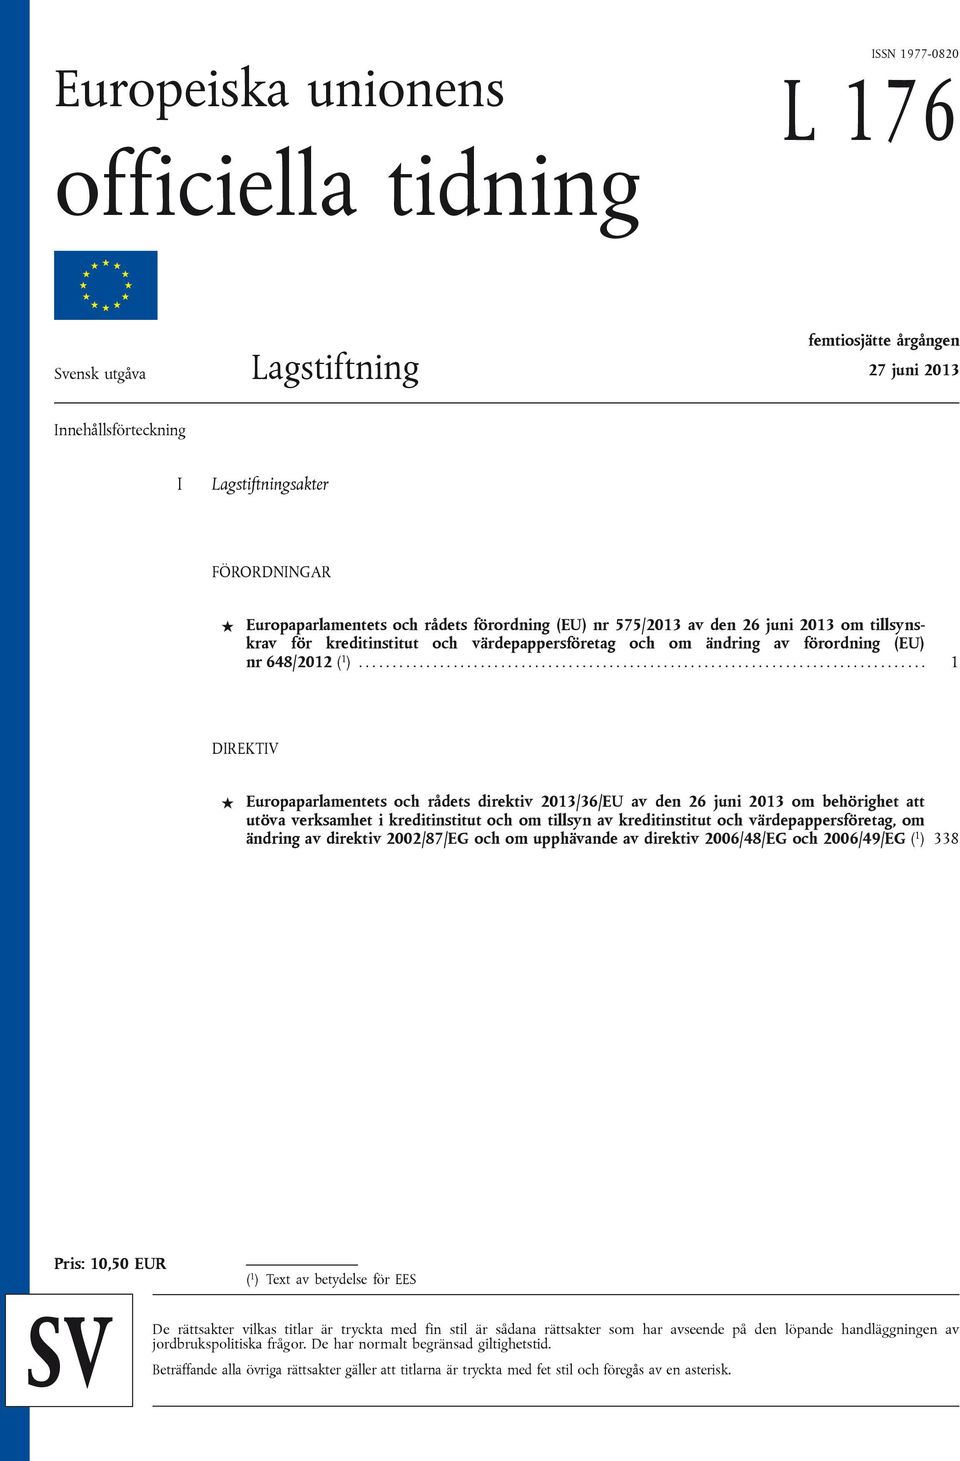 ................................................................................... 1 DIREKTIV Europaparlamentets och rådets direktiv 2013/36/EU av den 26 juni 2013 om behörighet att utöva verksamhet